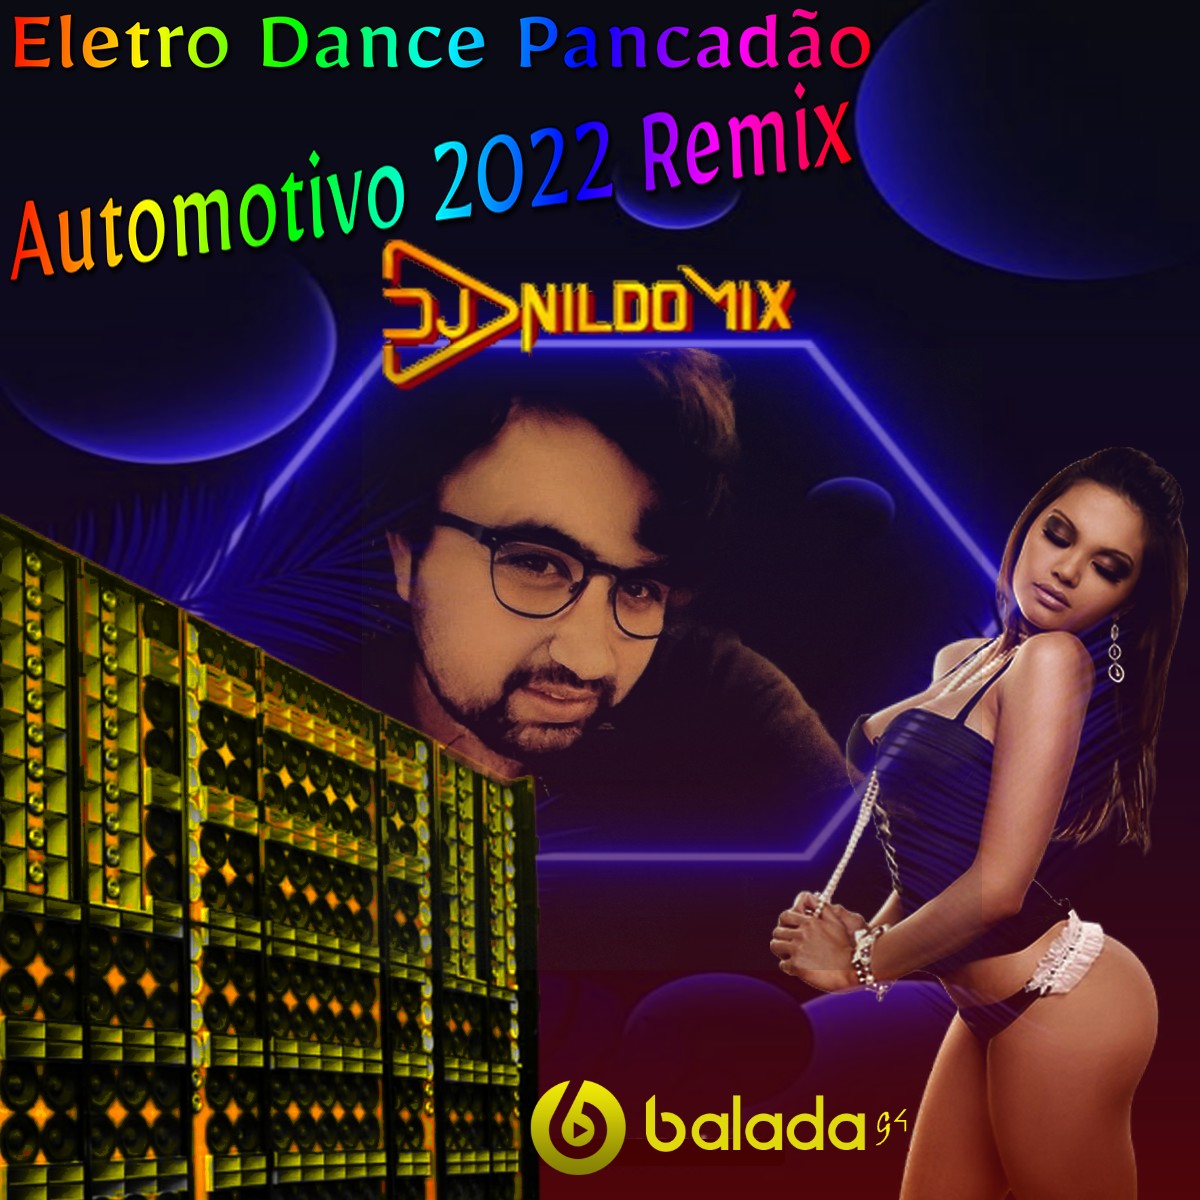 Eletro Dance Pancadão Automotivo 2022 Remix Dj Nildo Mix vol 13